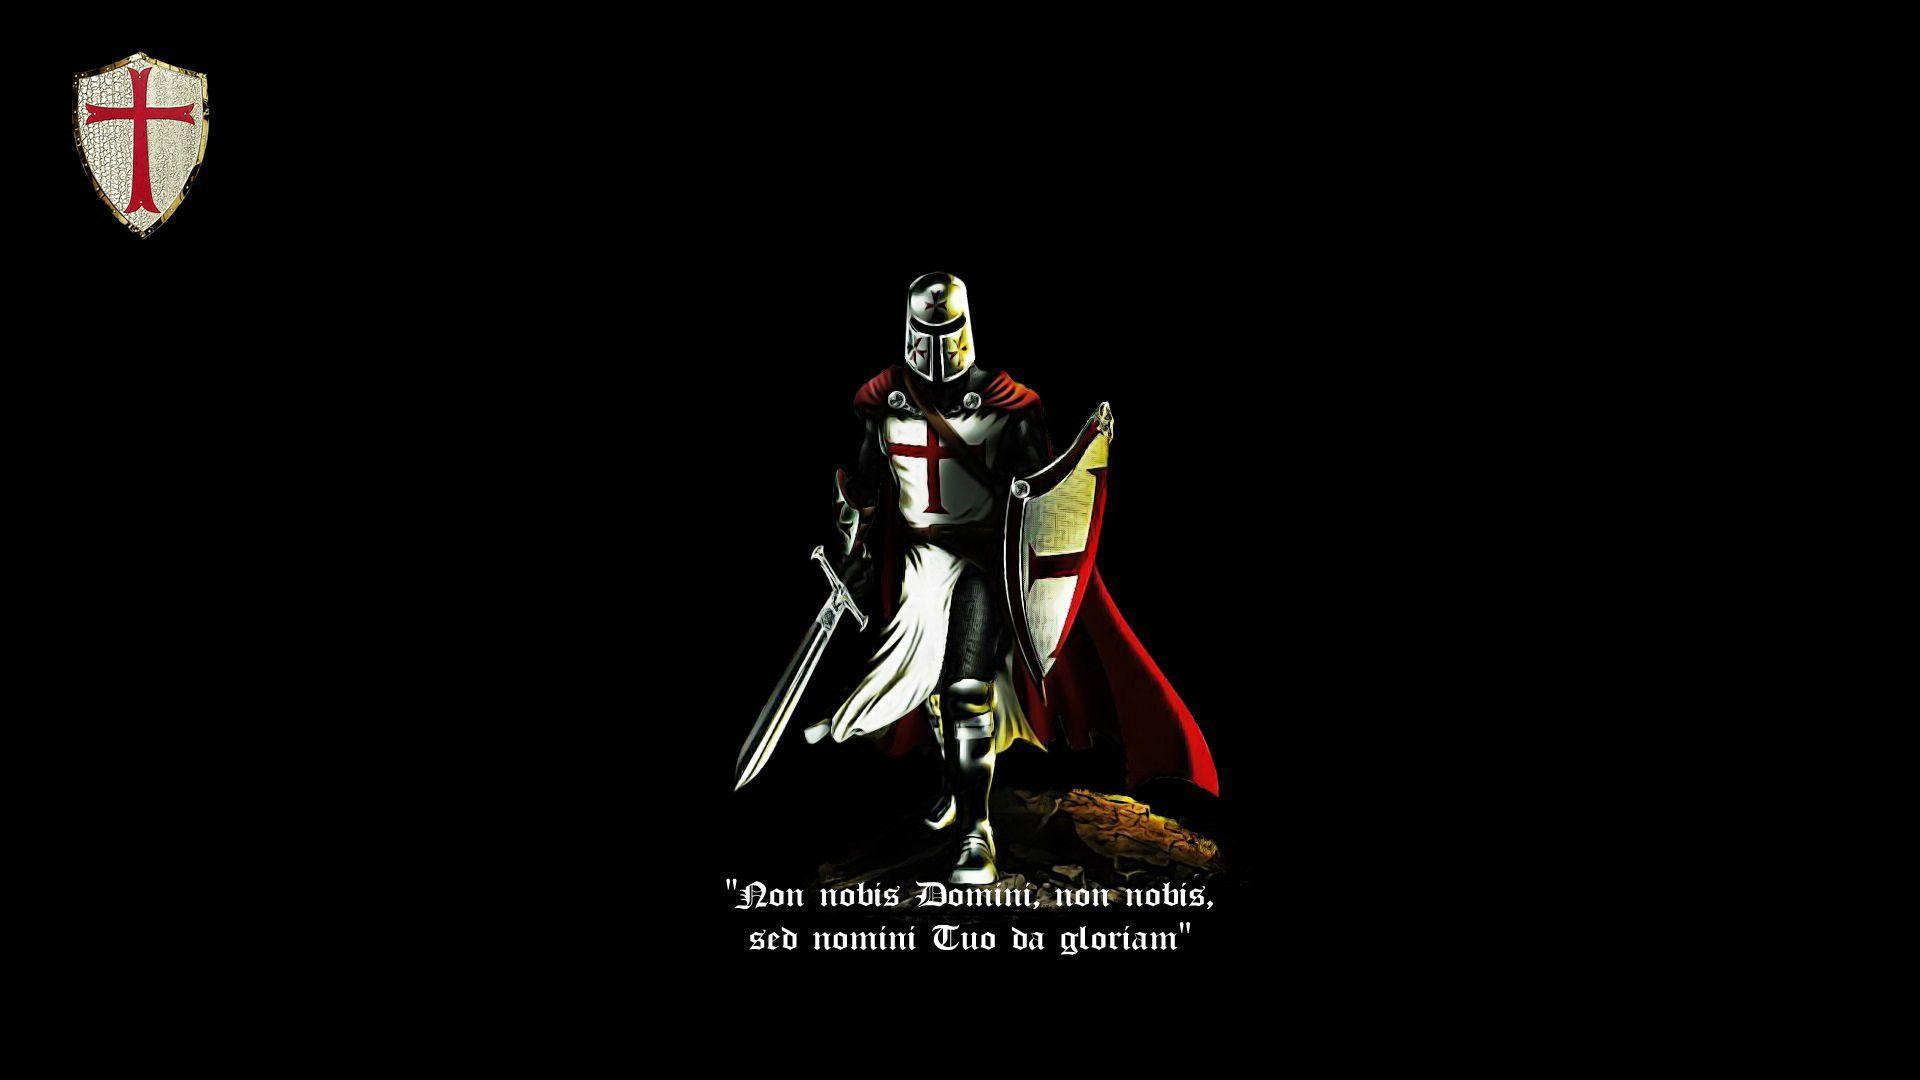 Knight Templar Wallpaper. wallpaper. Knights templar